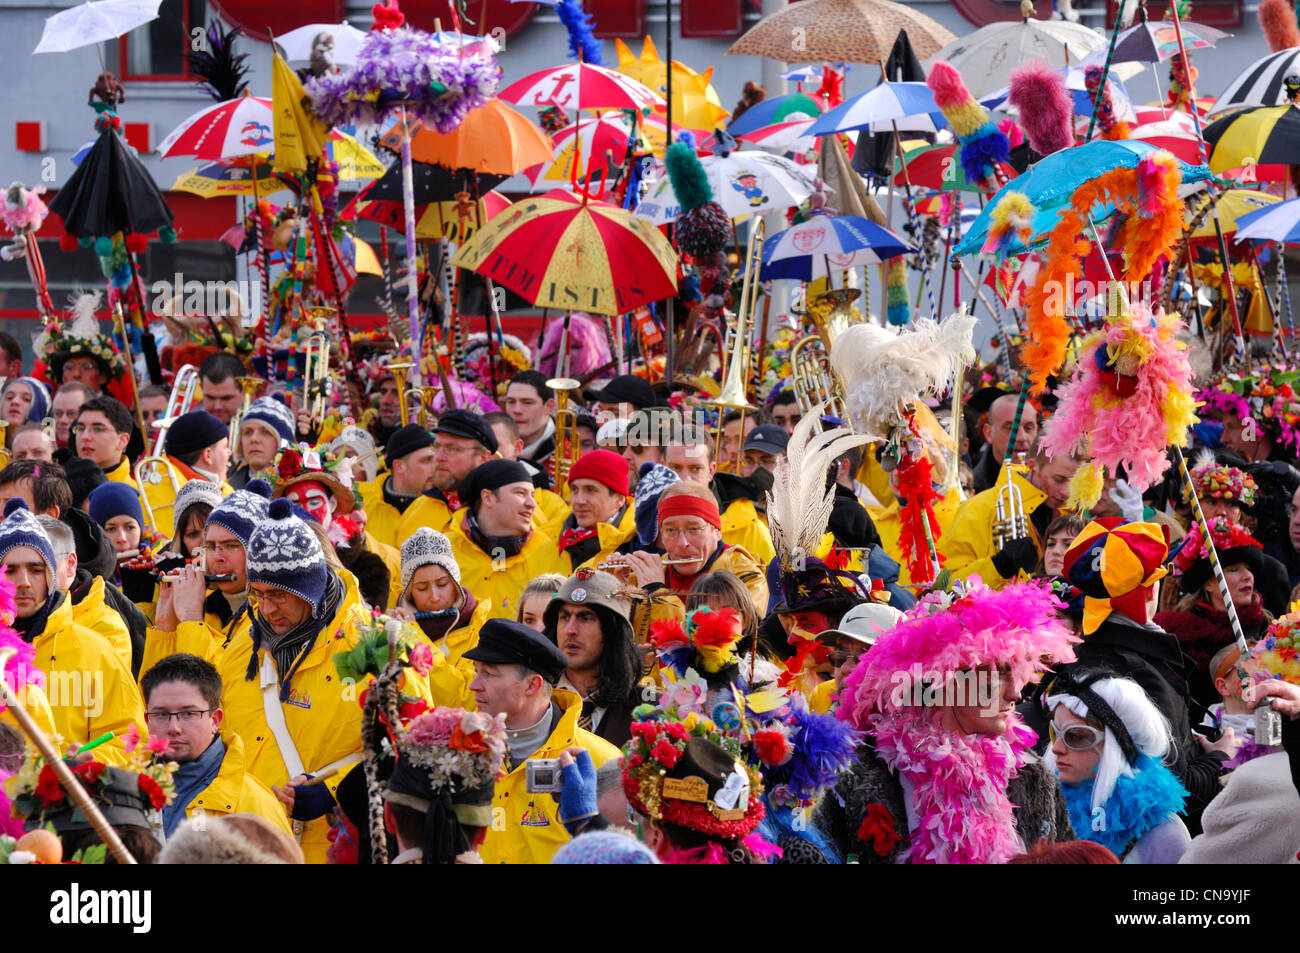 France, Nord, Dunkerque, carnaval de Dunkerque, parasols colorés sur la foule du carnaval Banque D'Images